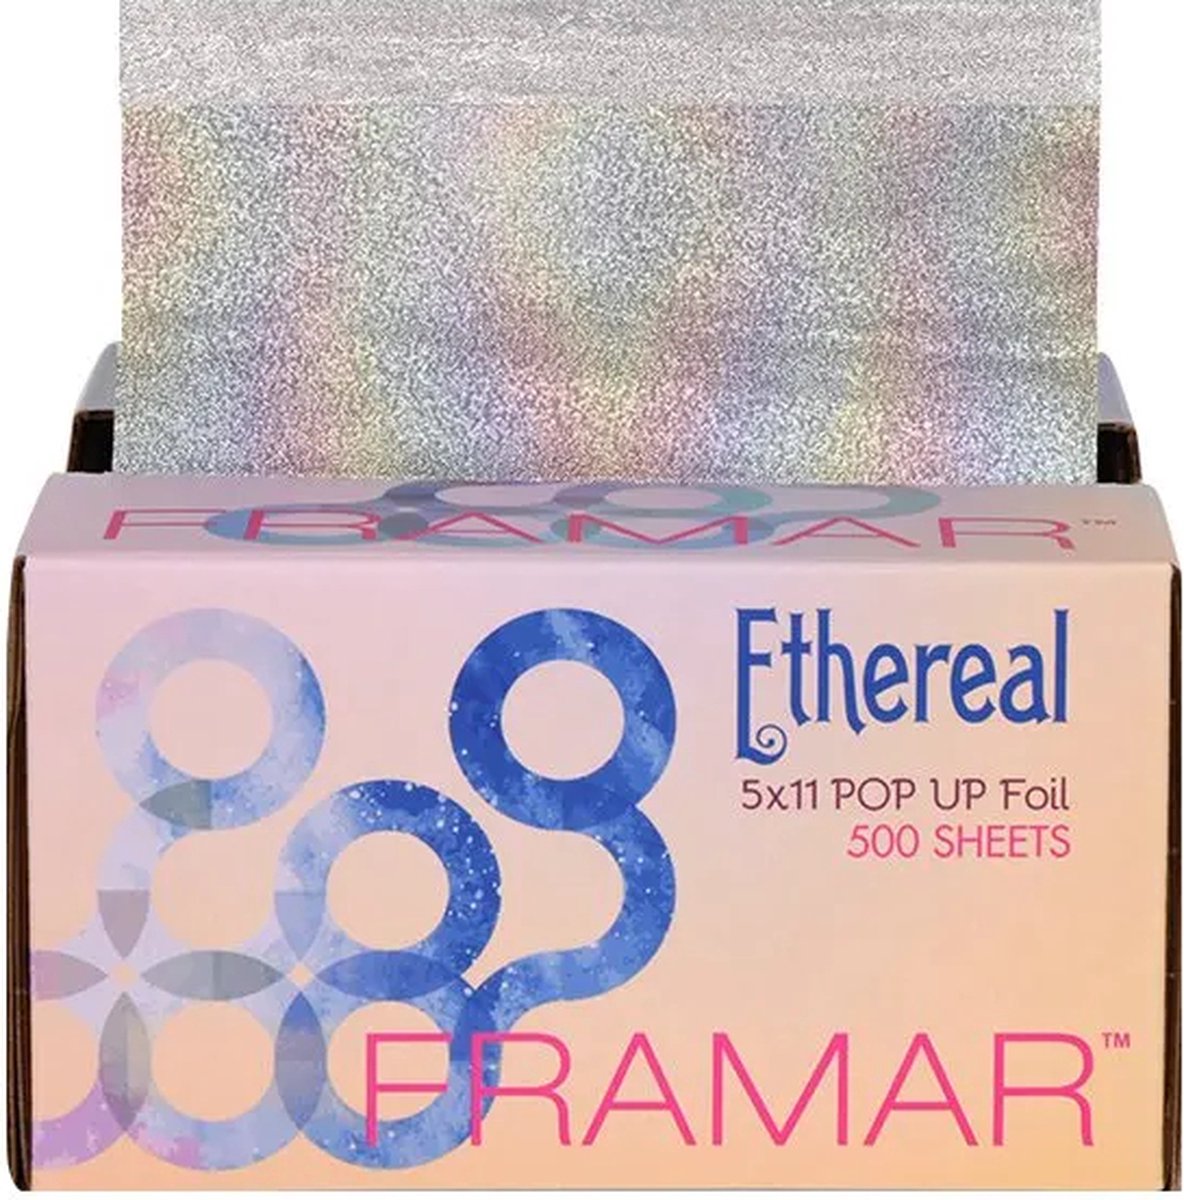 Framar Pop Up Foil 500 Sheets Ethereal 5x11